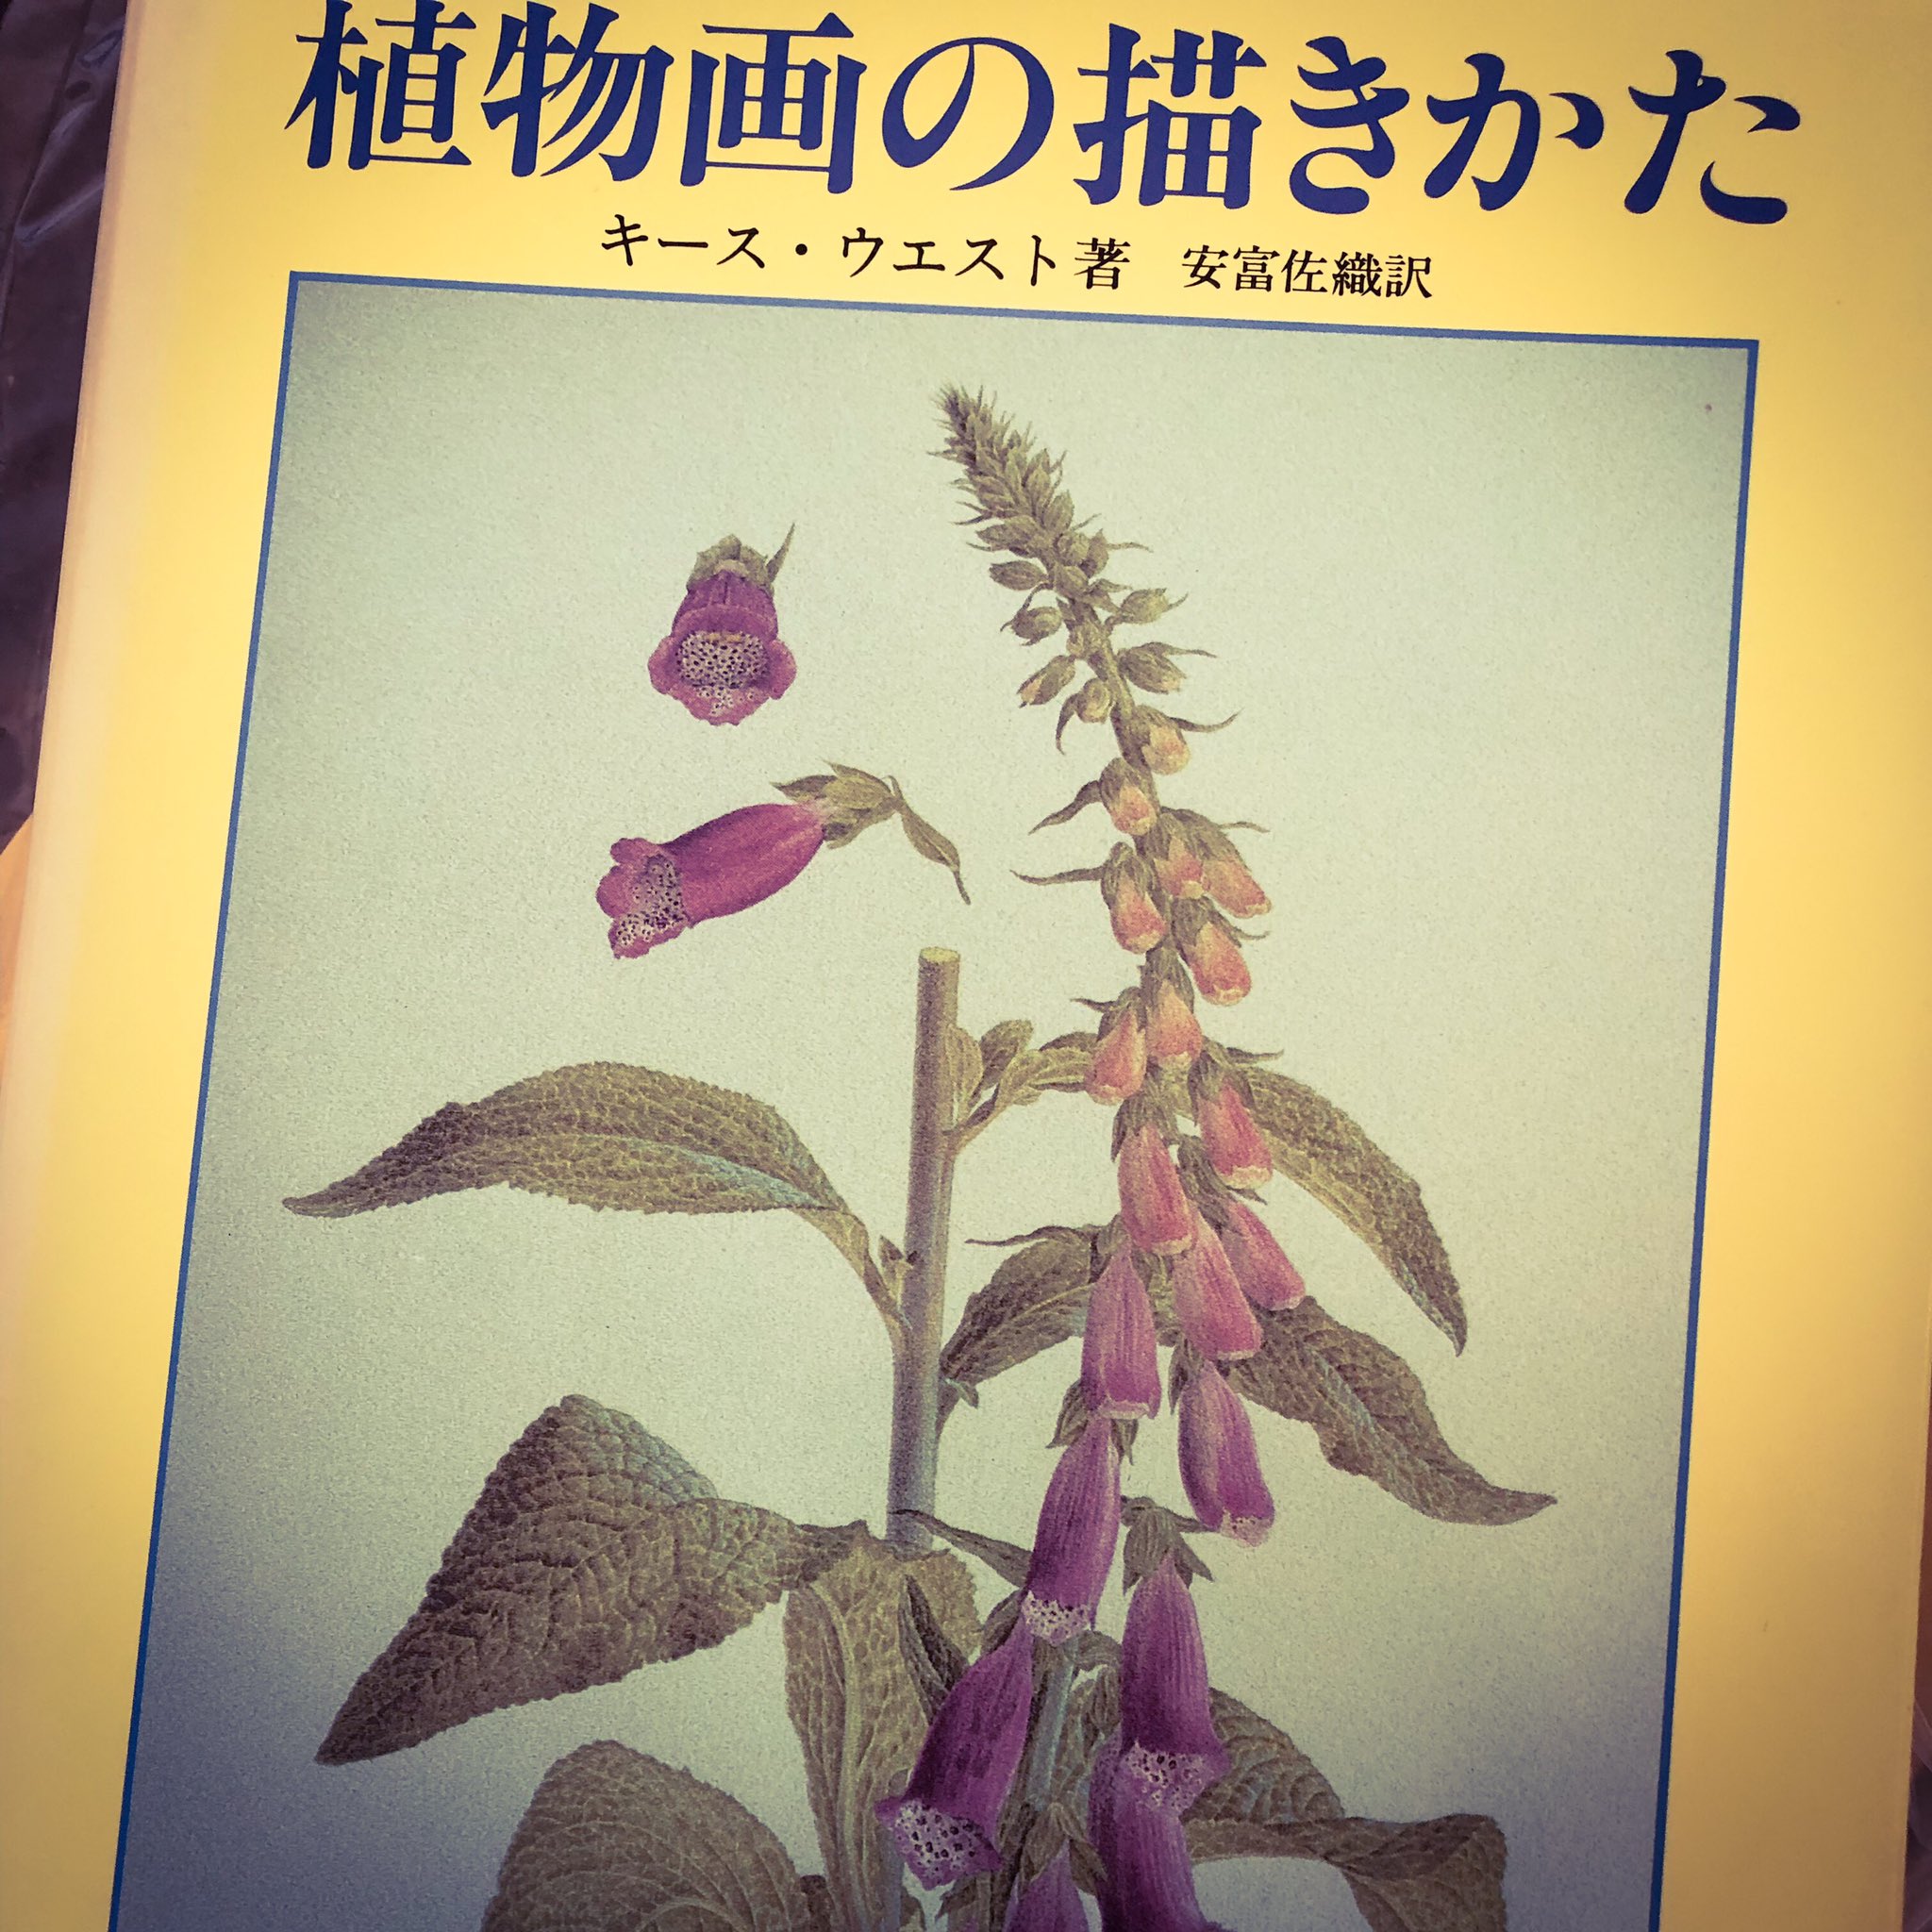 Kyoko Hayashibe この本 植物画ですが 細密表現の塗り方 がちゃんと紹介されていてすばらしい まだ流し読み 訳者は植物学からイラストレーターになった人なので訳も安心